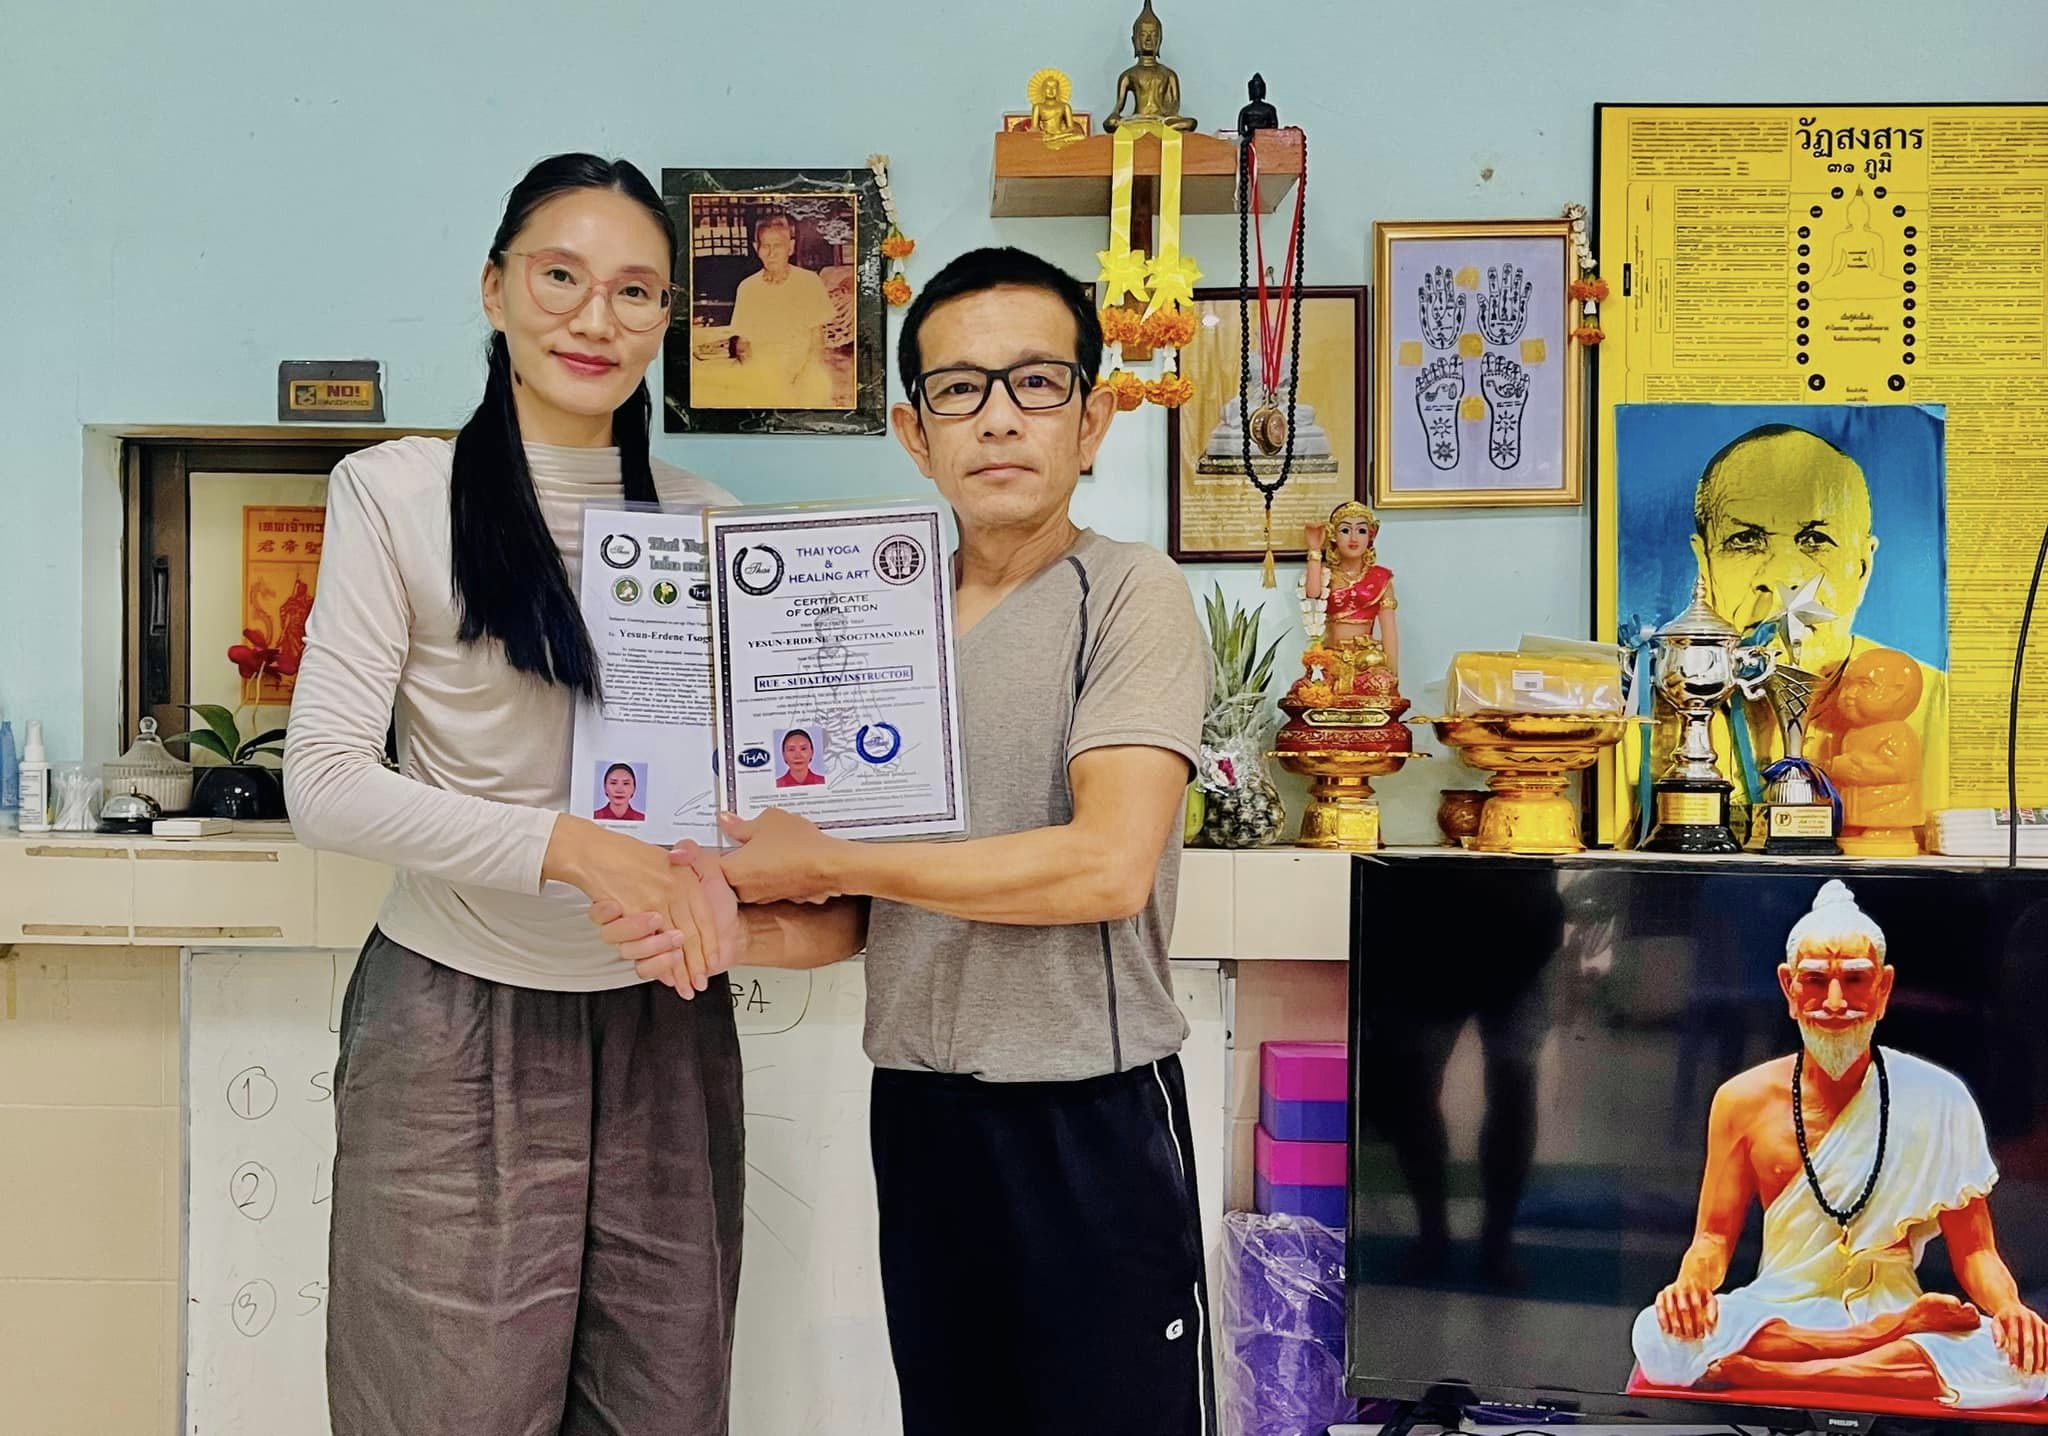 “Тайландын иогийн массаж” эмчилгээний ахисан түвшний мэргэжлийн багш бэлтгэх сургалт